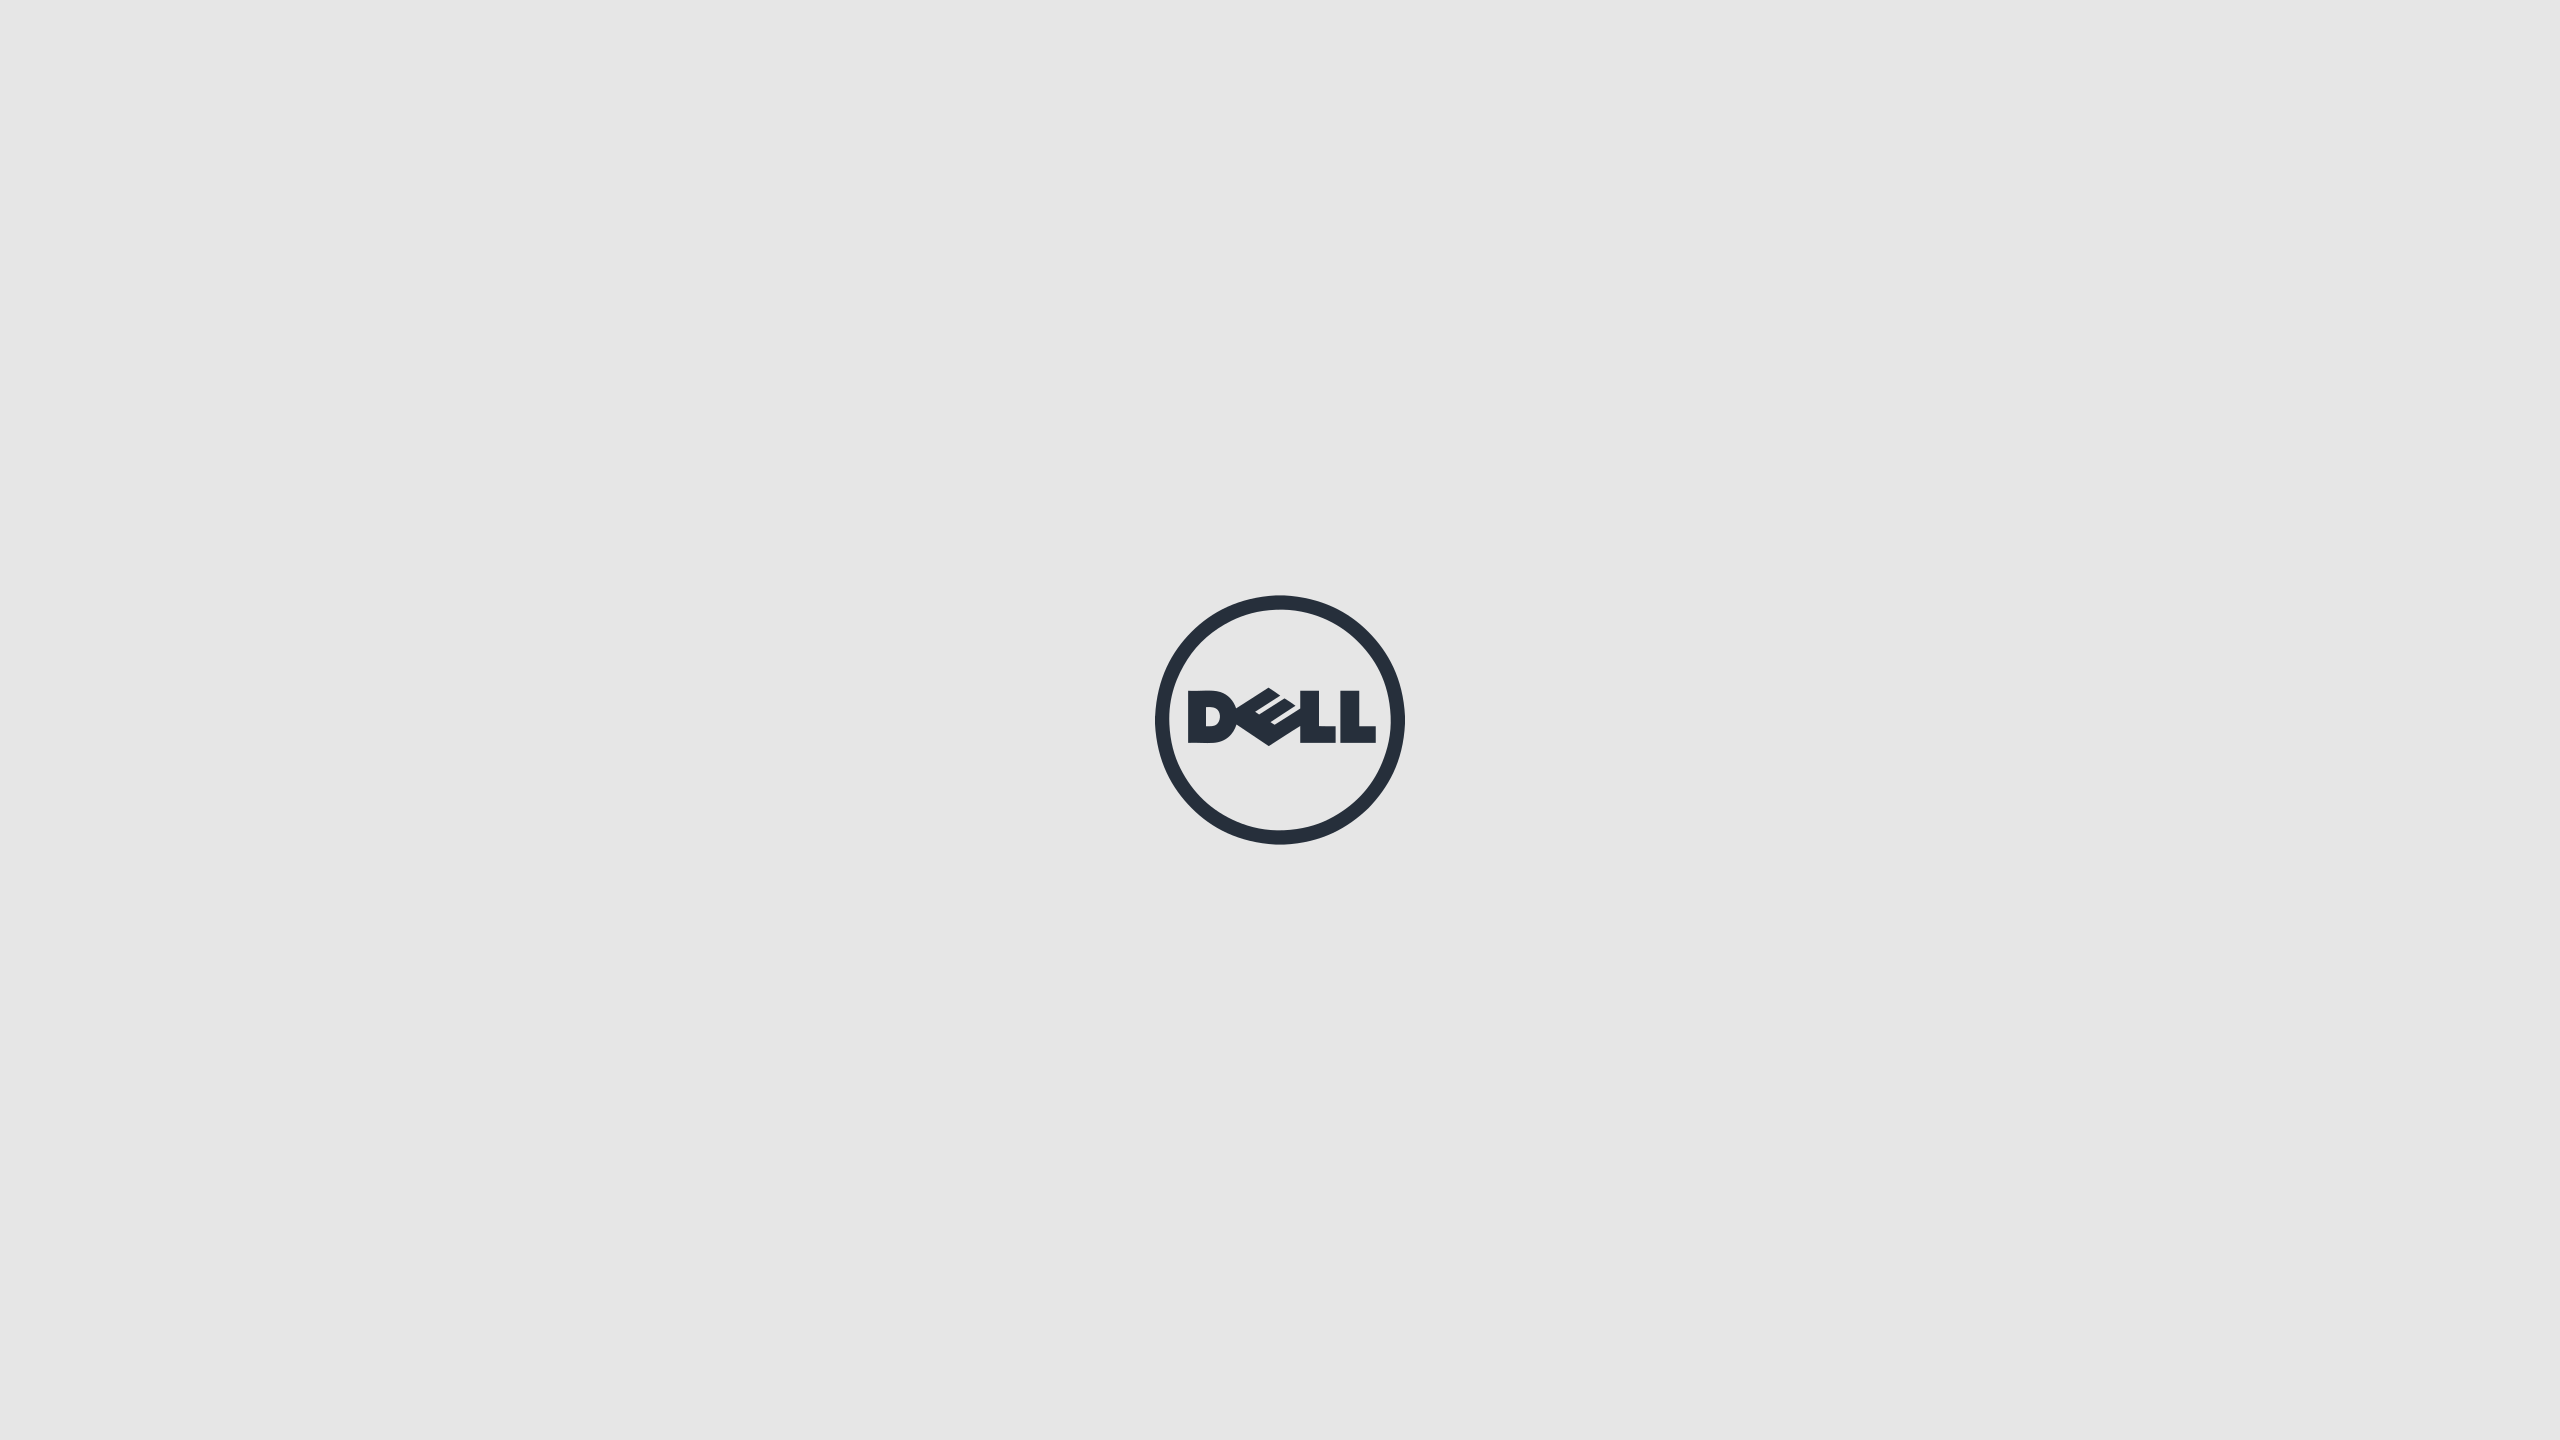 Logo Brands Dell Minimalism Wallpaper Resolution 2560x1440 Id Wallha Com